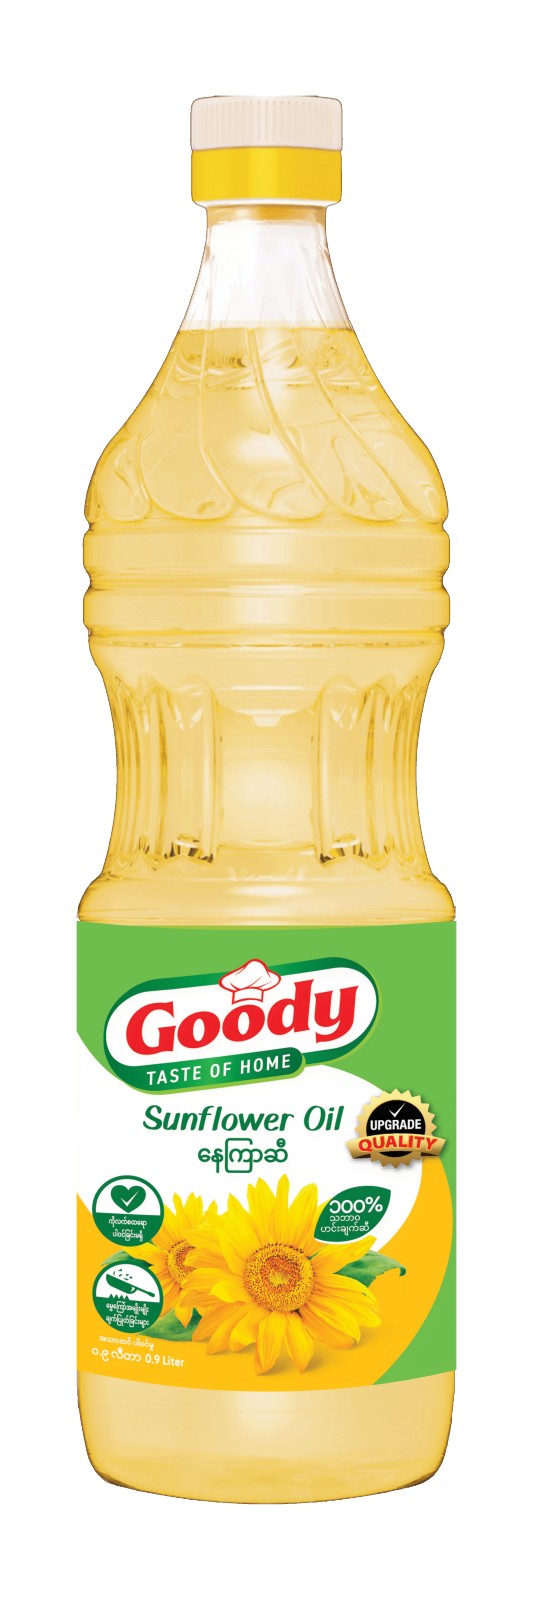 Goody Sunflower Oil 0.9-Buy 1 Pcs Save 500Ks